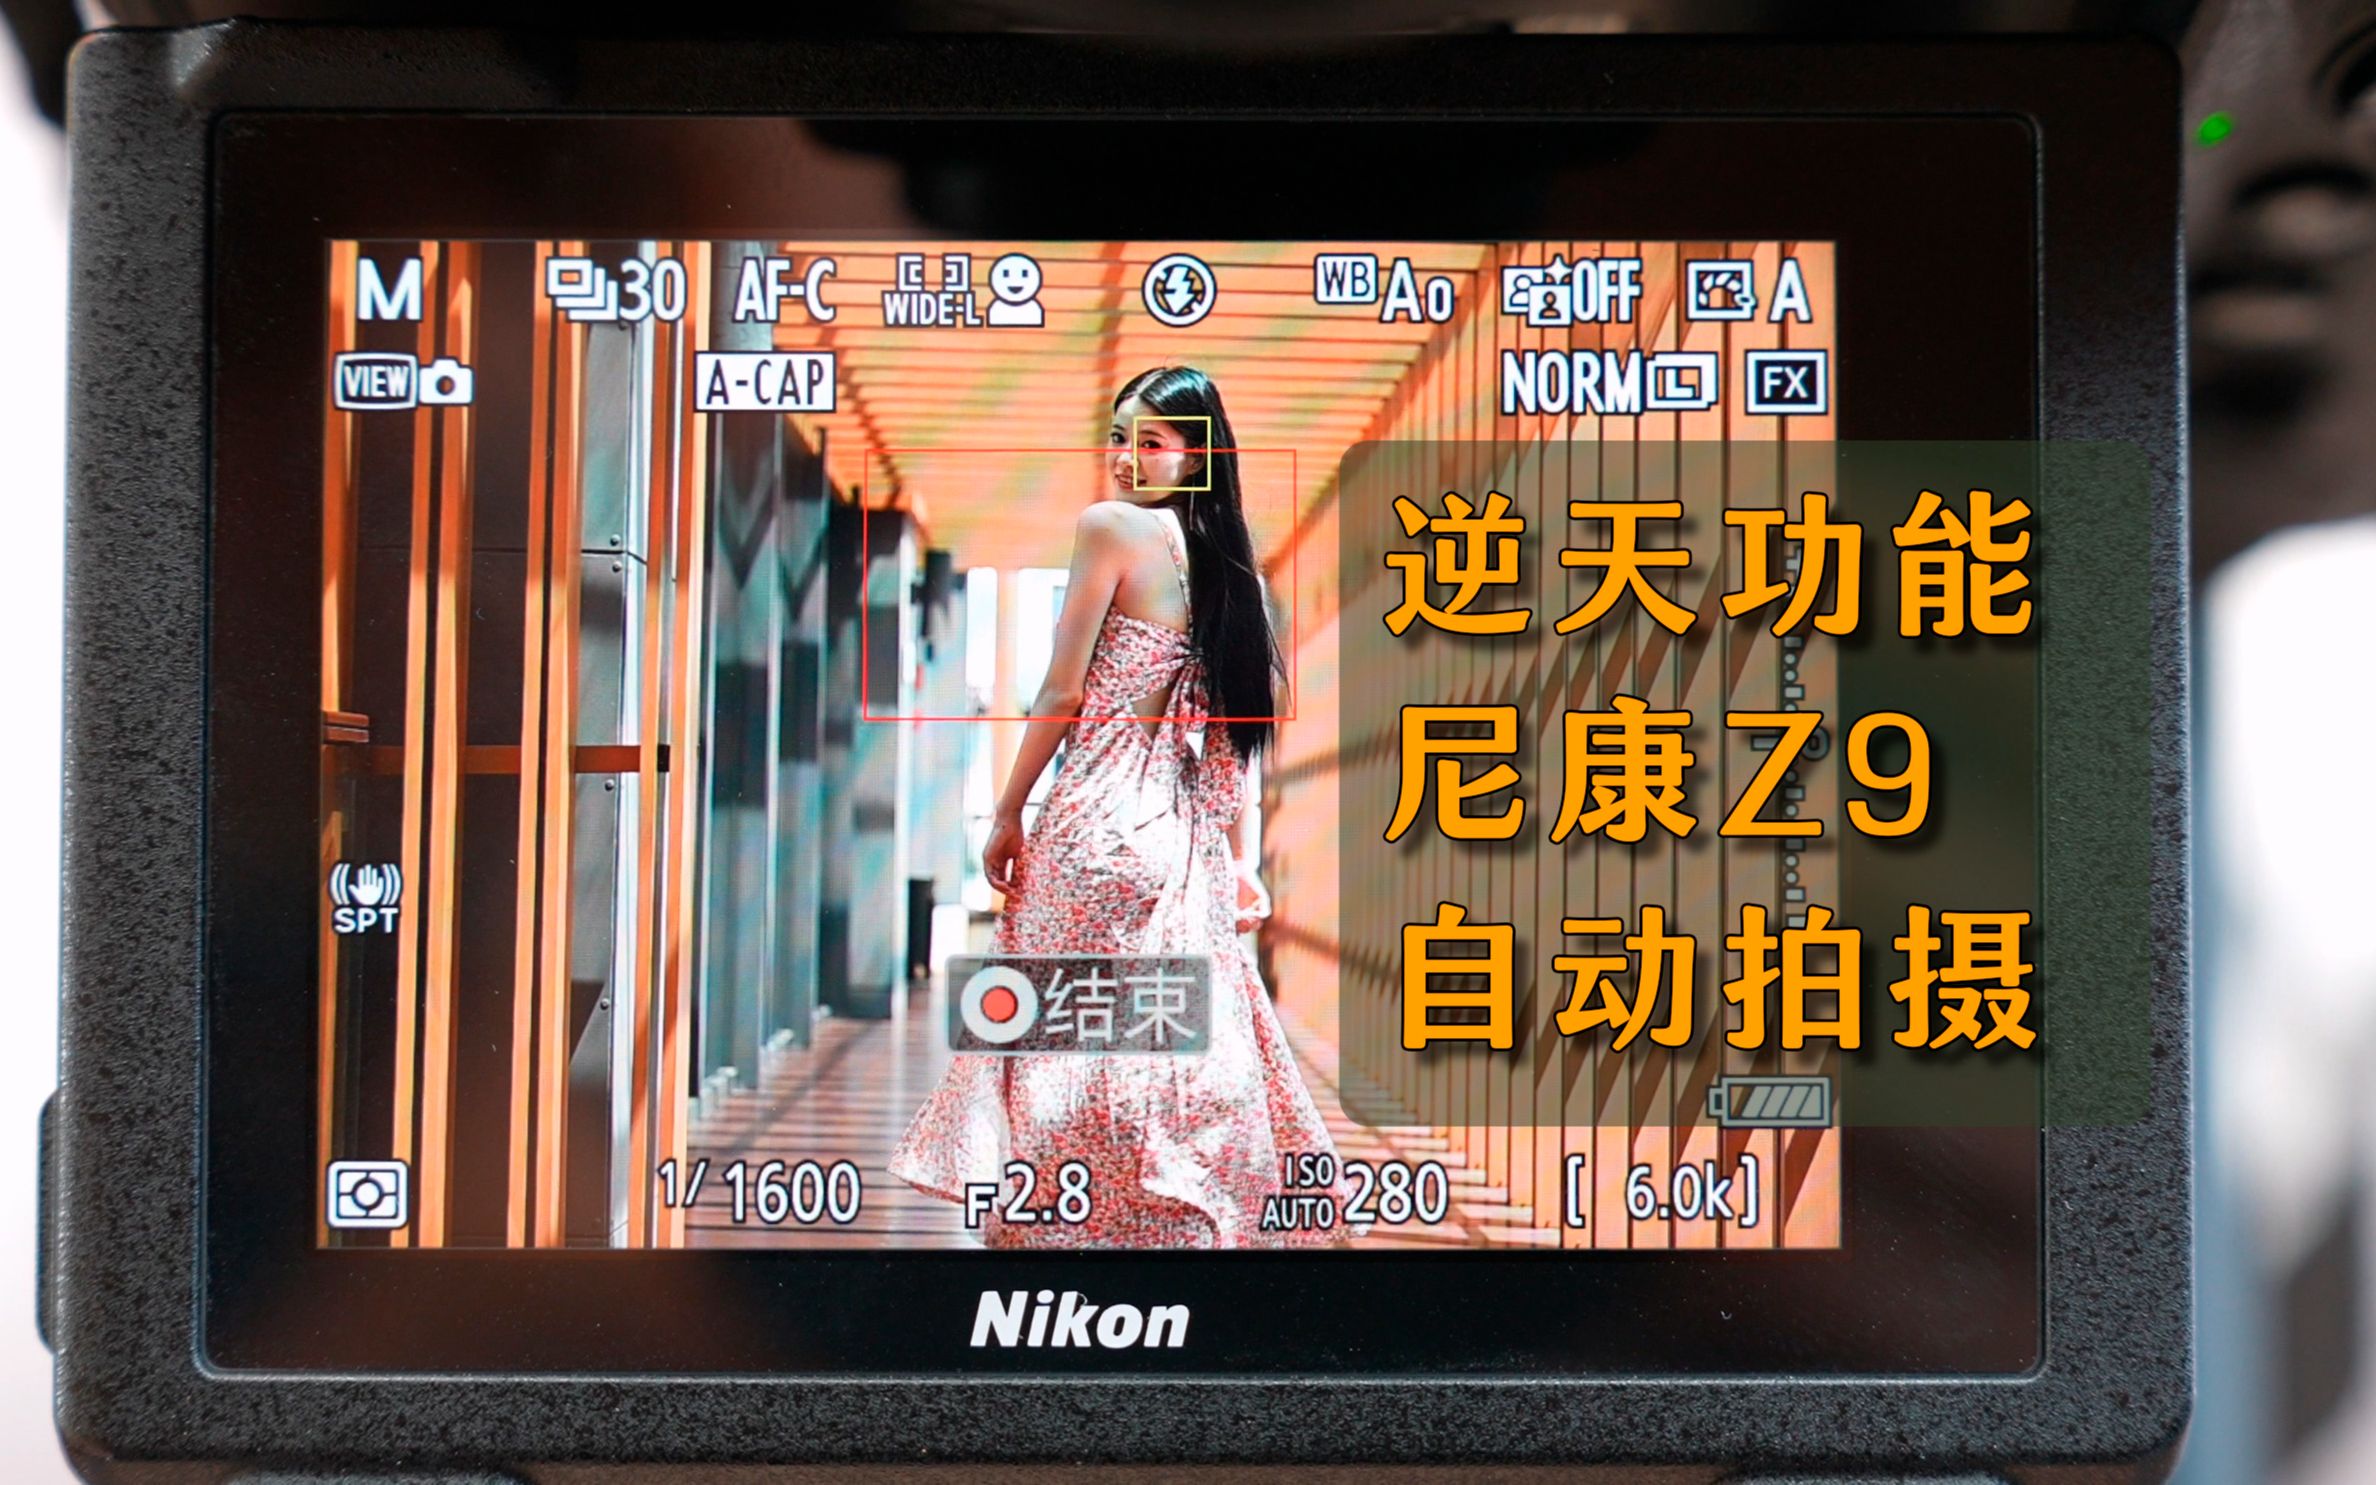 第一台自动拍摄功能的相机，4.0固件重大更新，尼康Z8/Z9自动拍摄功能介绍